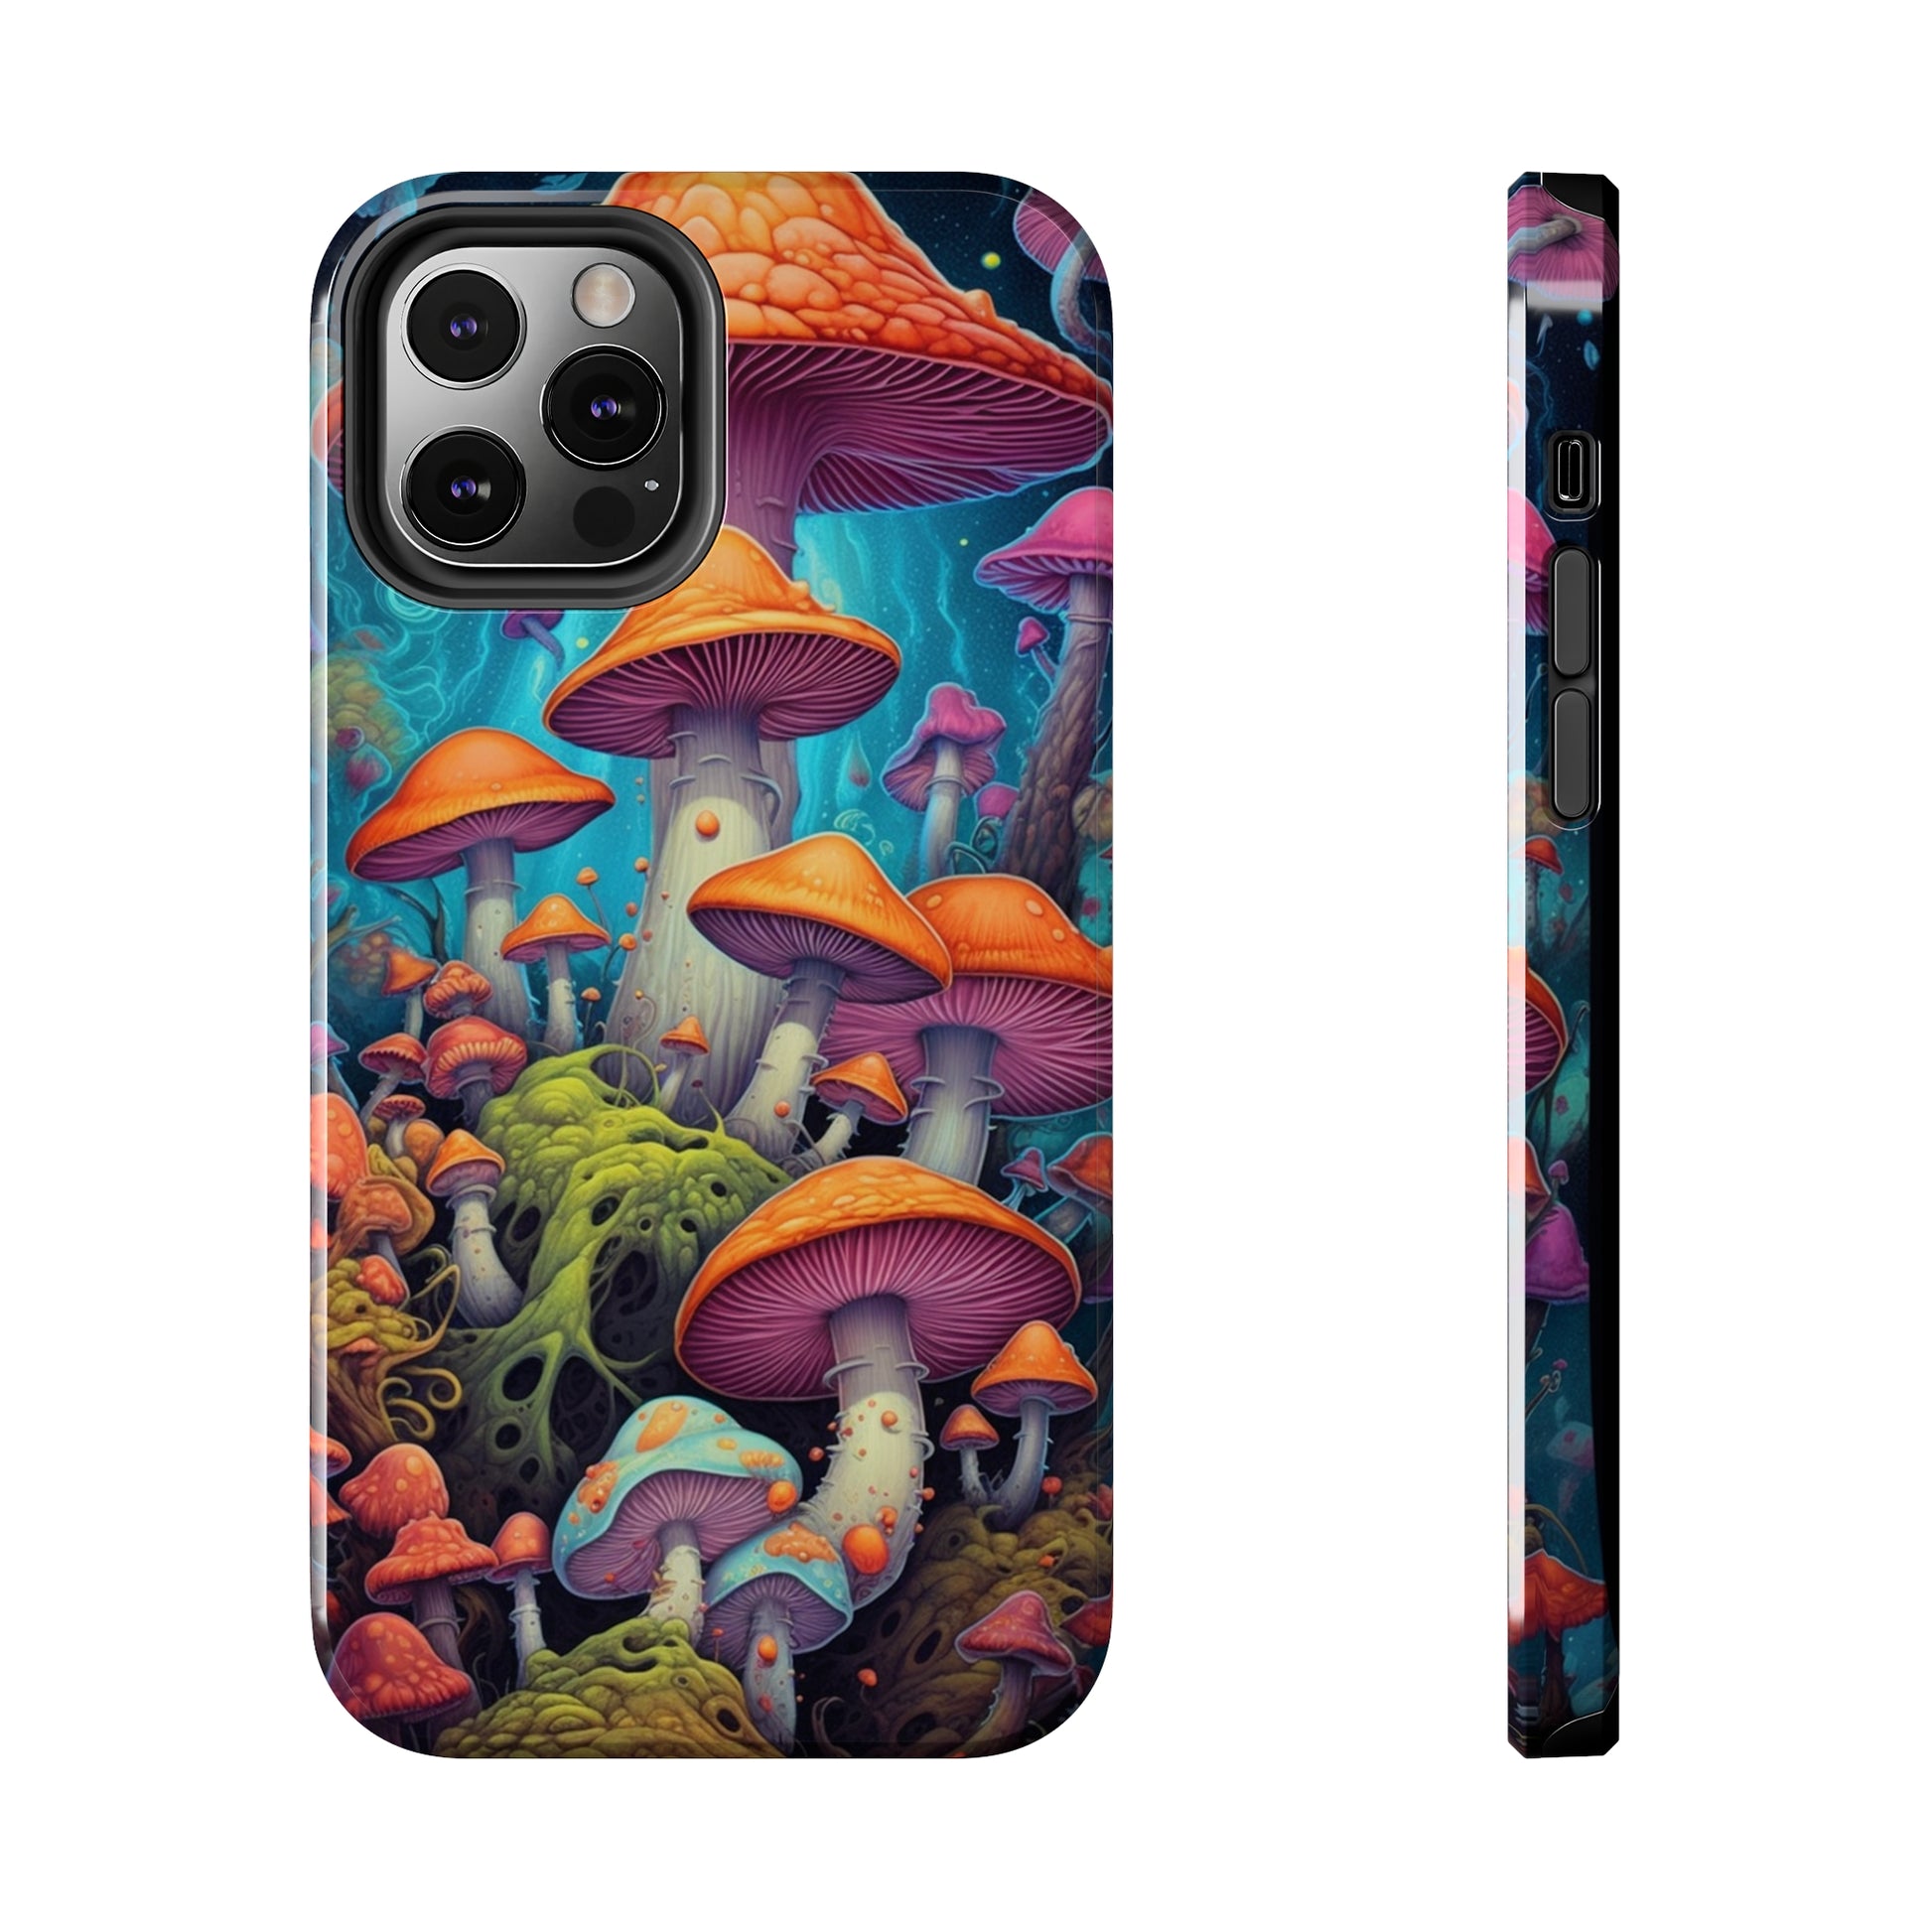 Colorful Magic Mushrooms iPhone Case